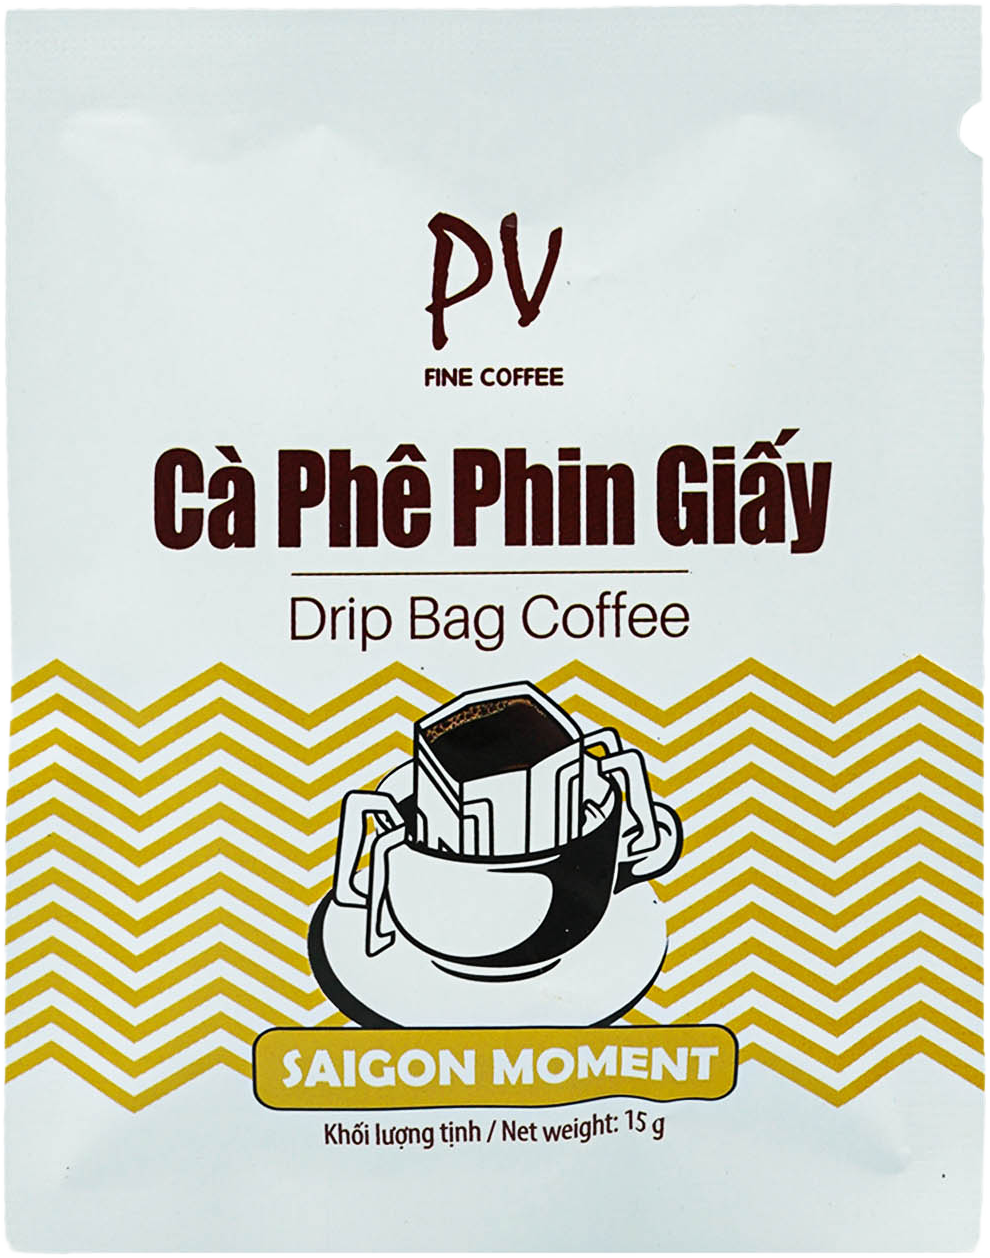 Cà Phê Phin Giấy PV Fine Coffee Drip Bag Coffee Saigon Moment - Cà Phê Tiện Lợi - Cà Phê Nguyên Chất (120g) - Phương Vy Coffee